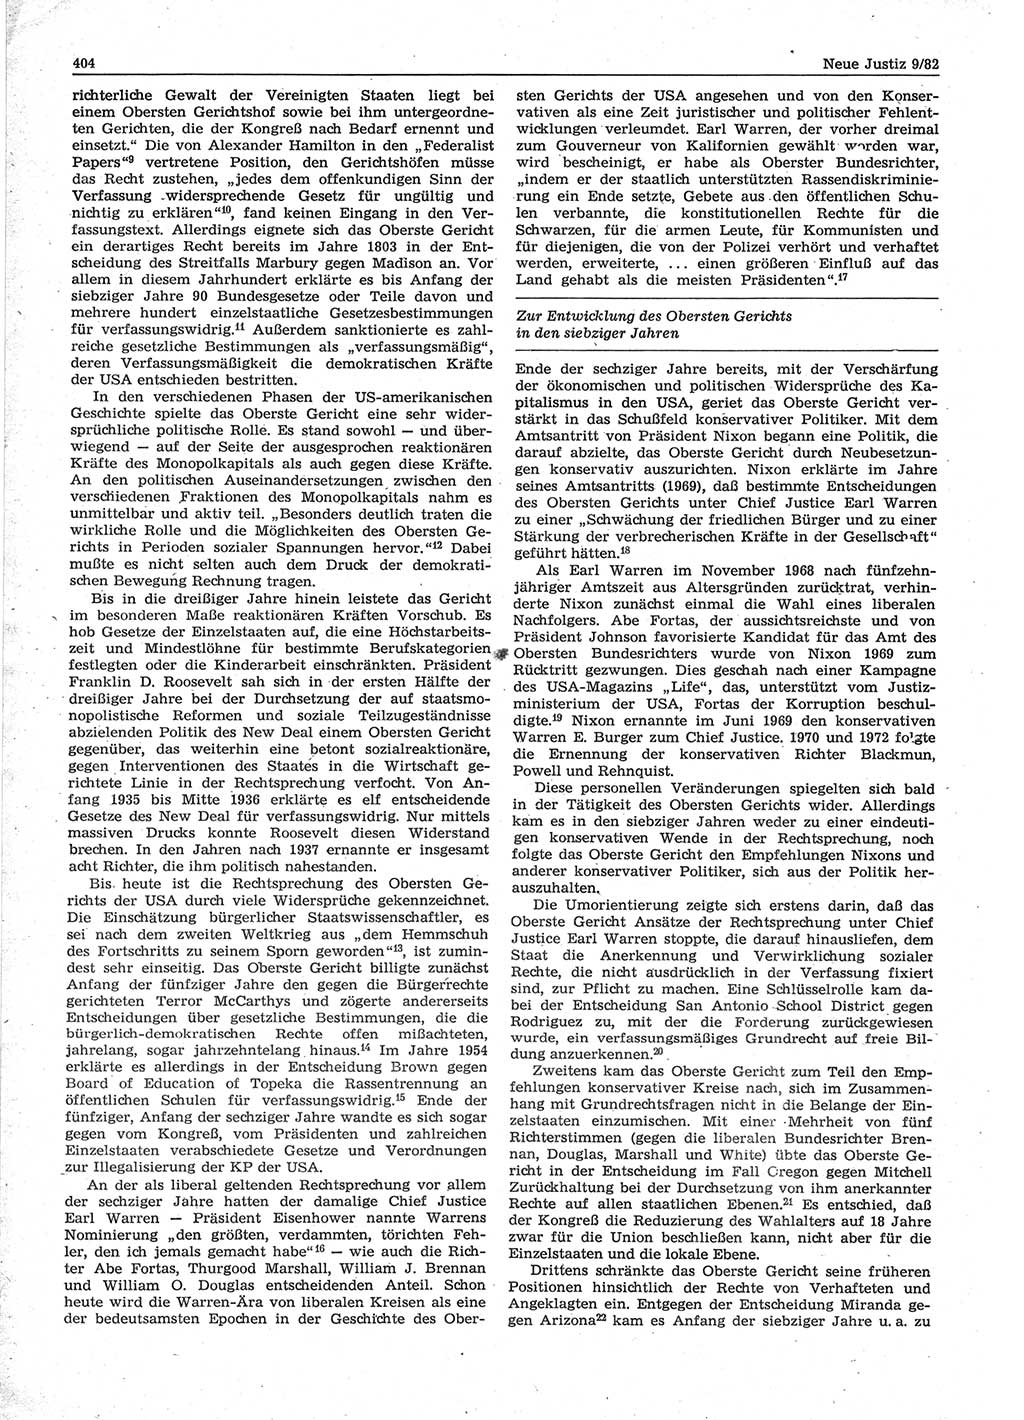 Neue Justiz (NJ), Zeitschrift für sozialistisches Recht und Gesetzlichkeit [Deutsche Demokratische Republik (DDR)], 36. Jahrgang 1982, Seite 404 (NJ DDR 1982, S. 404)